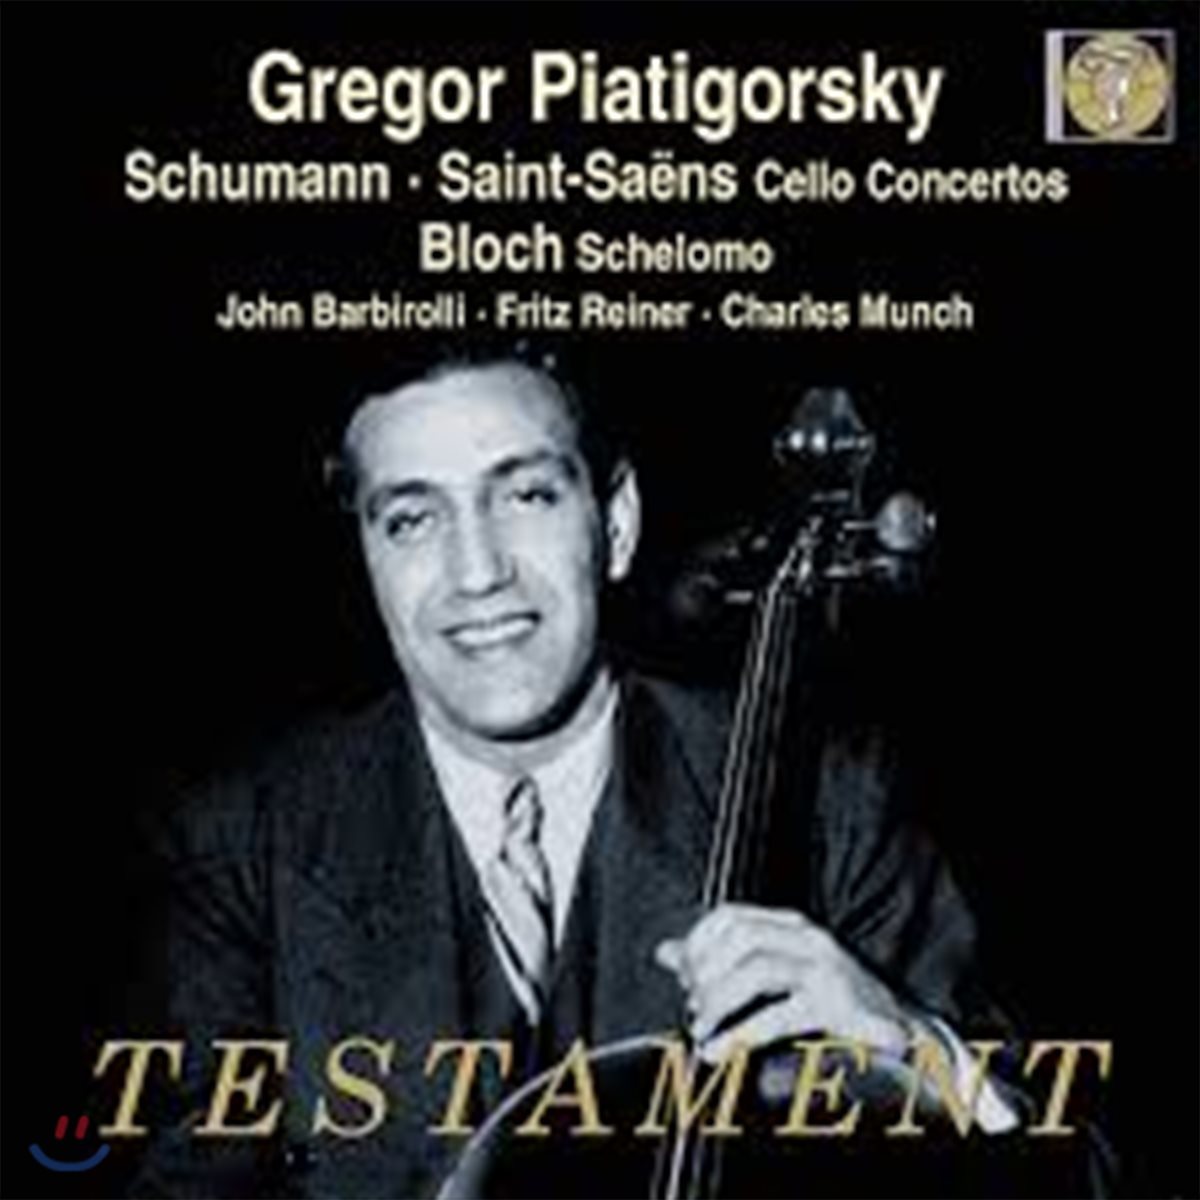 Gregor Piatigorsky 슈만 / 생상스: 첼로 협주곡 (Schumann / Saint-Saens: Cello Concertos)